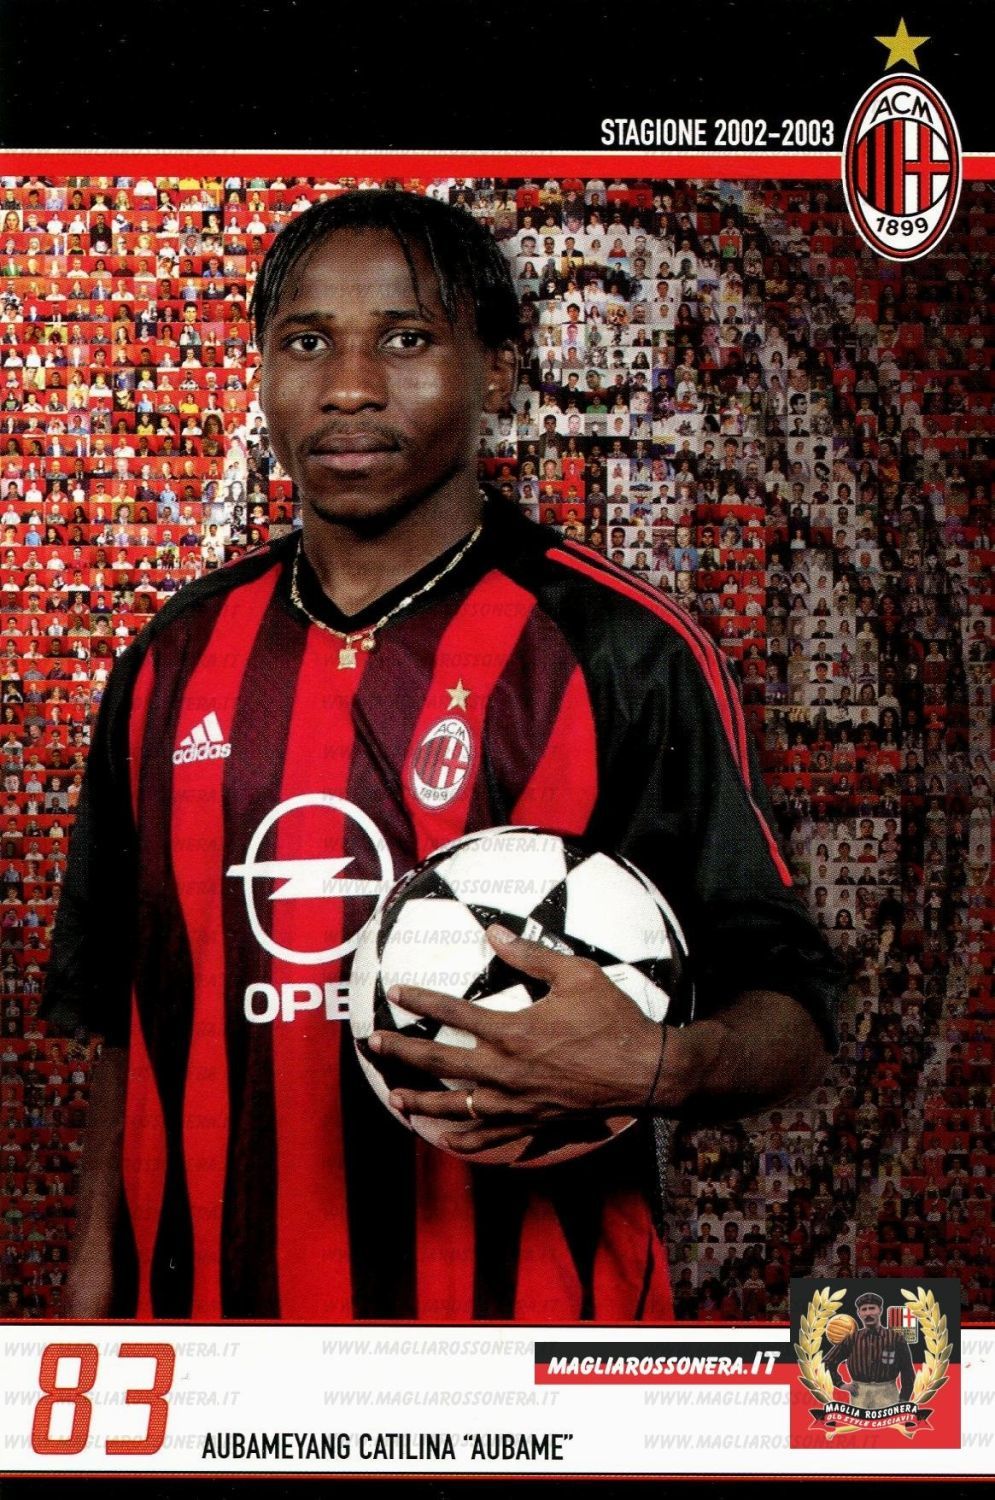 13. Catilina Aubameyang - AC Milan (2003).